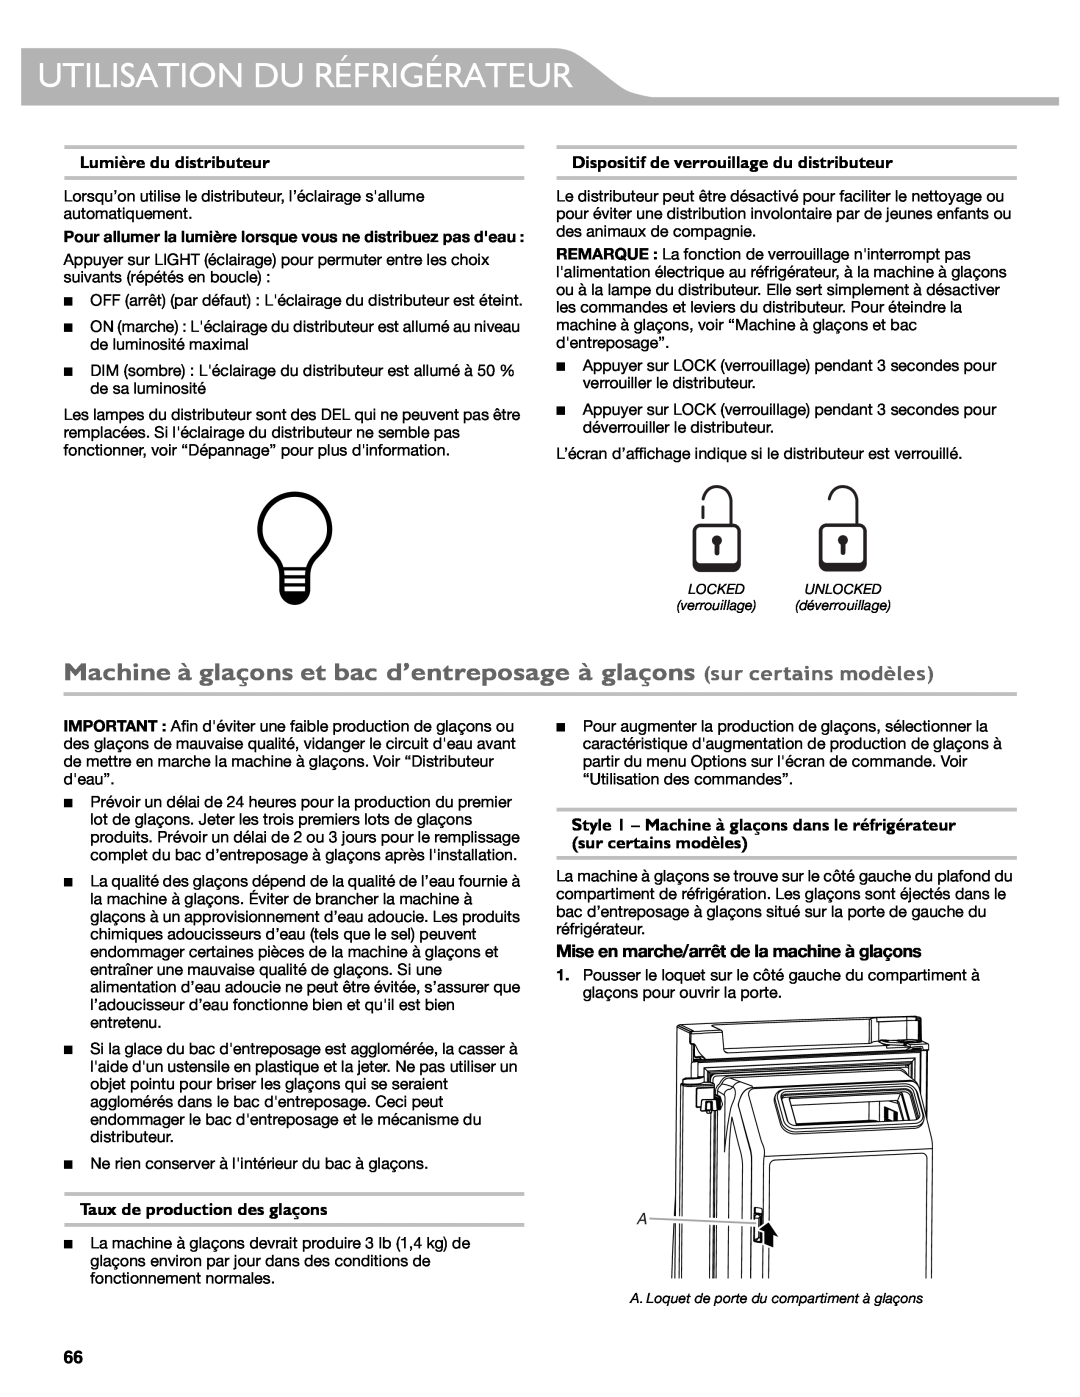 KitchenAid W10417002A manual Machine à glaçons et bac d’entreposage à glaçons sur certains modèles, Lumière du distributeur 